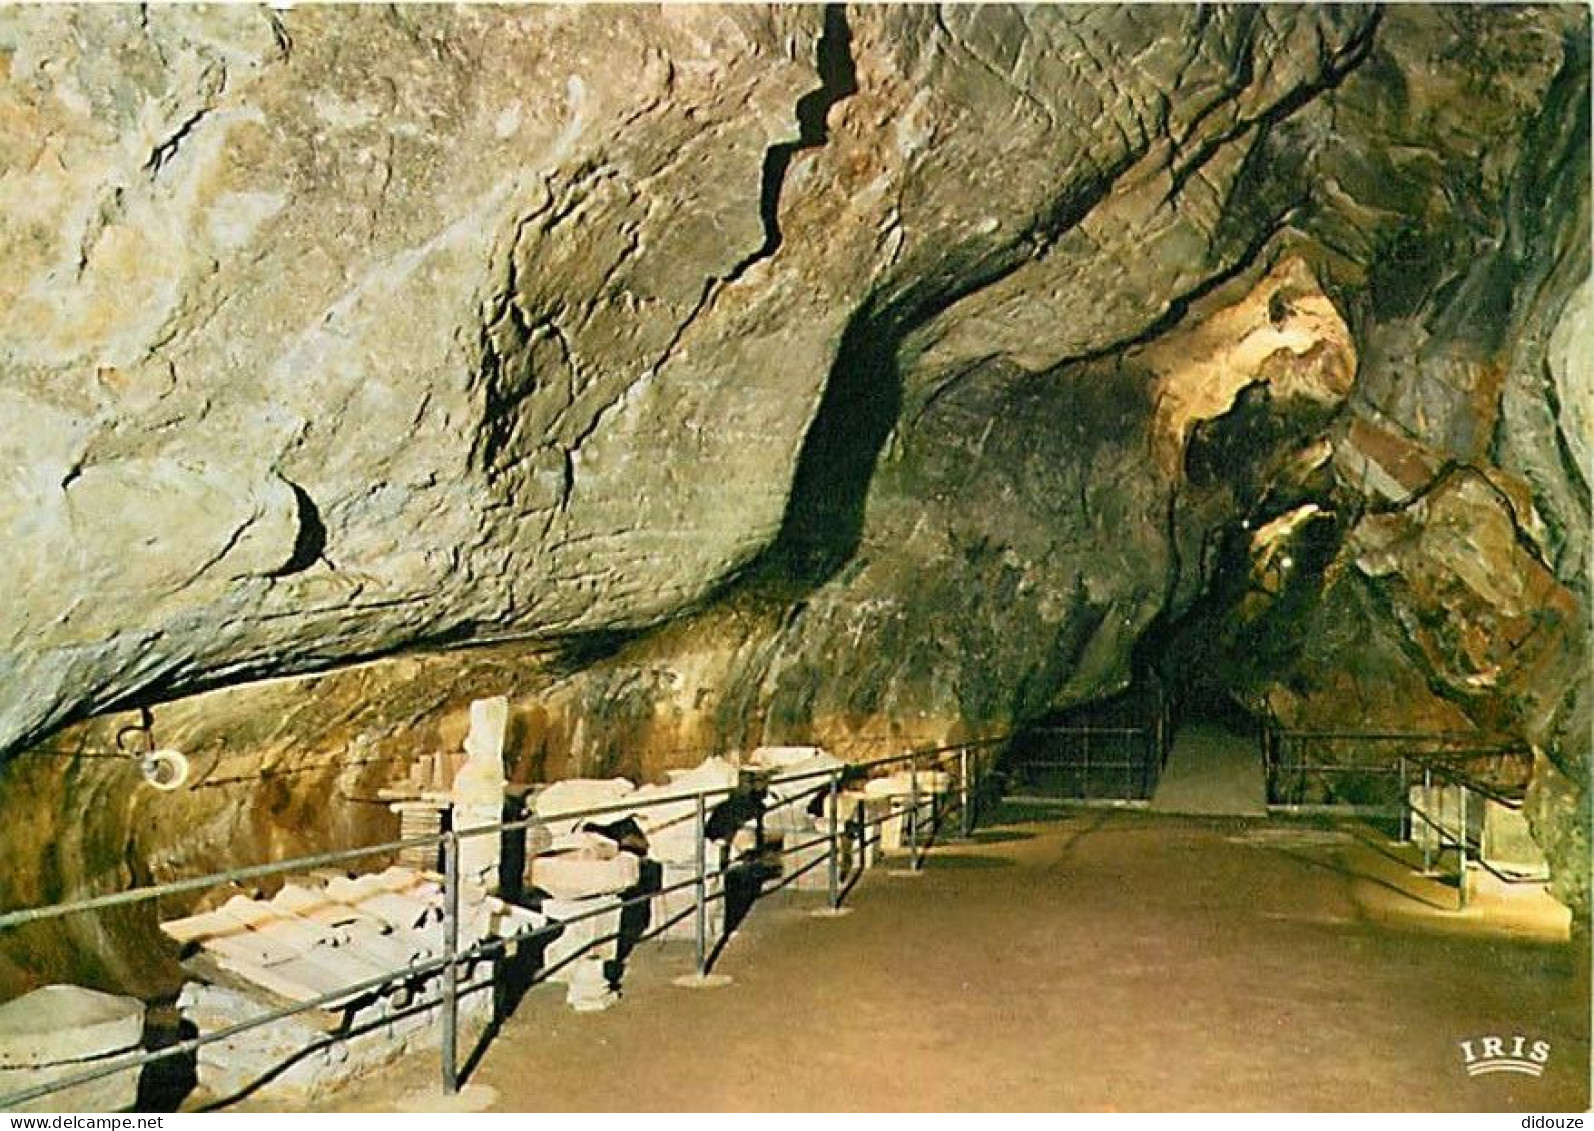 71 - Azé - Grottes Préhistoriques - Entrée Et Musée Lapidaire - Carte Neuve - CPM - Voir Scans Recto-Verso - Other & Unclassified